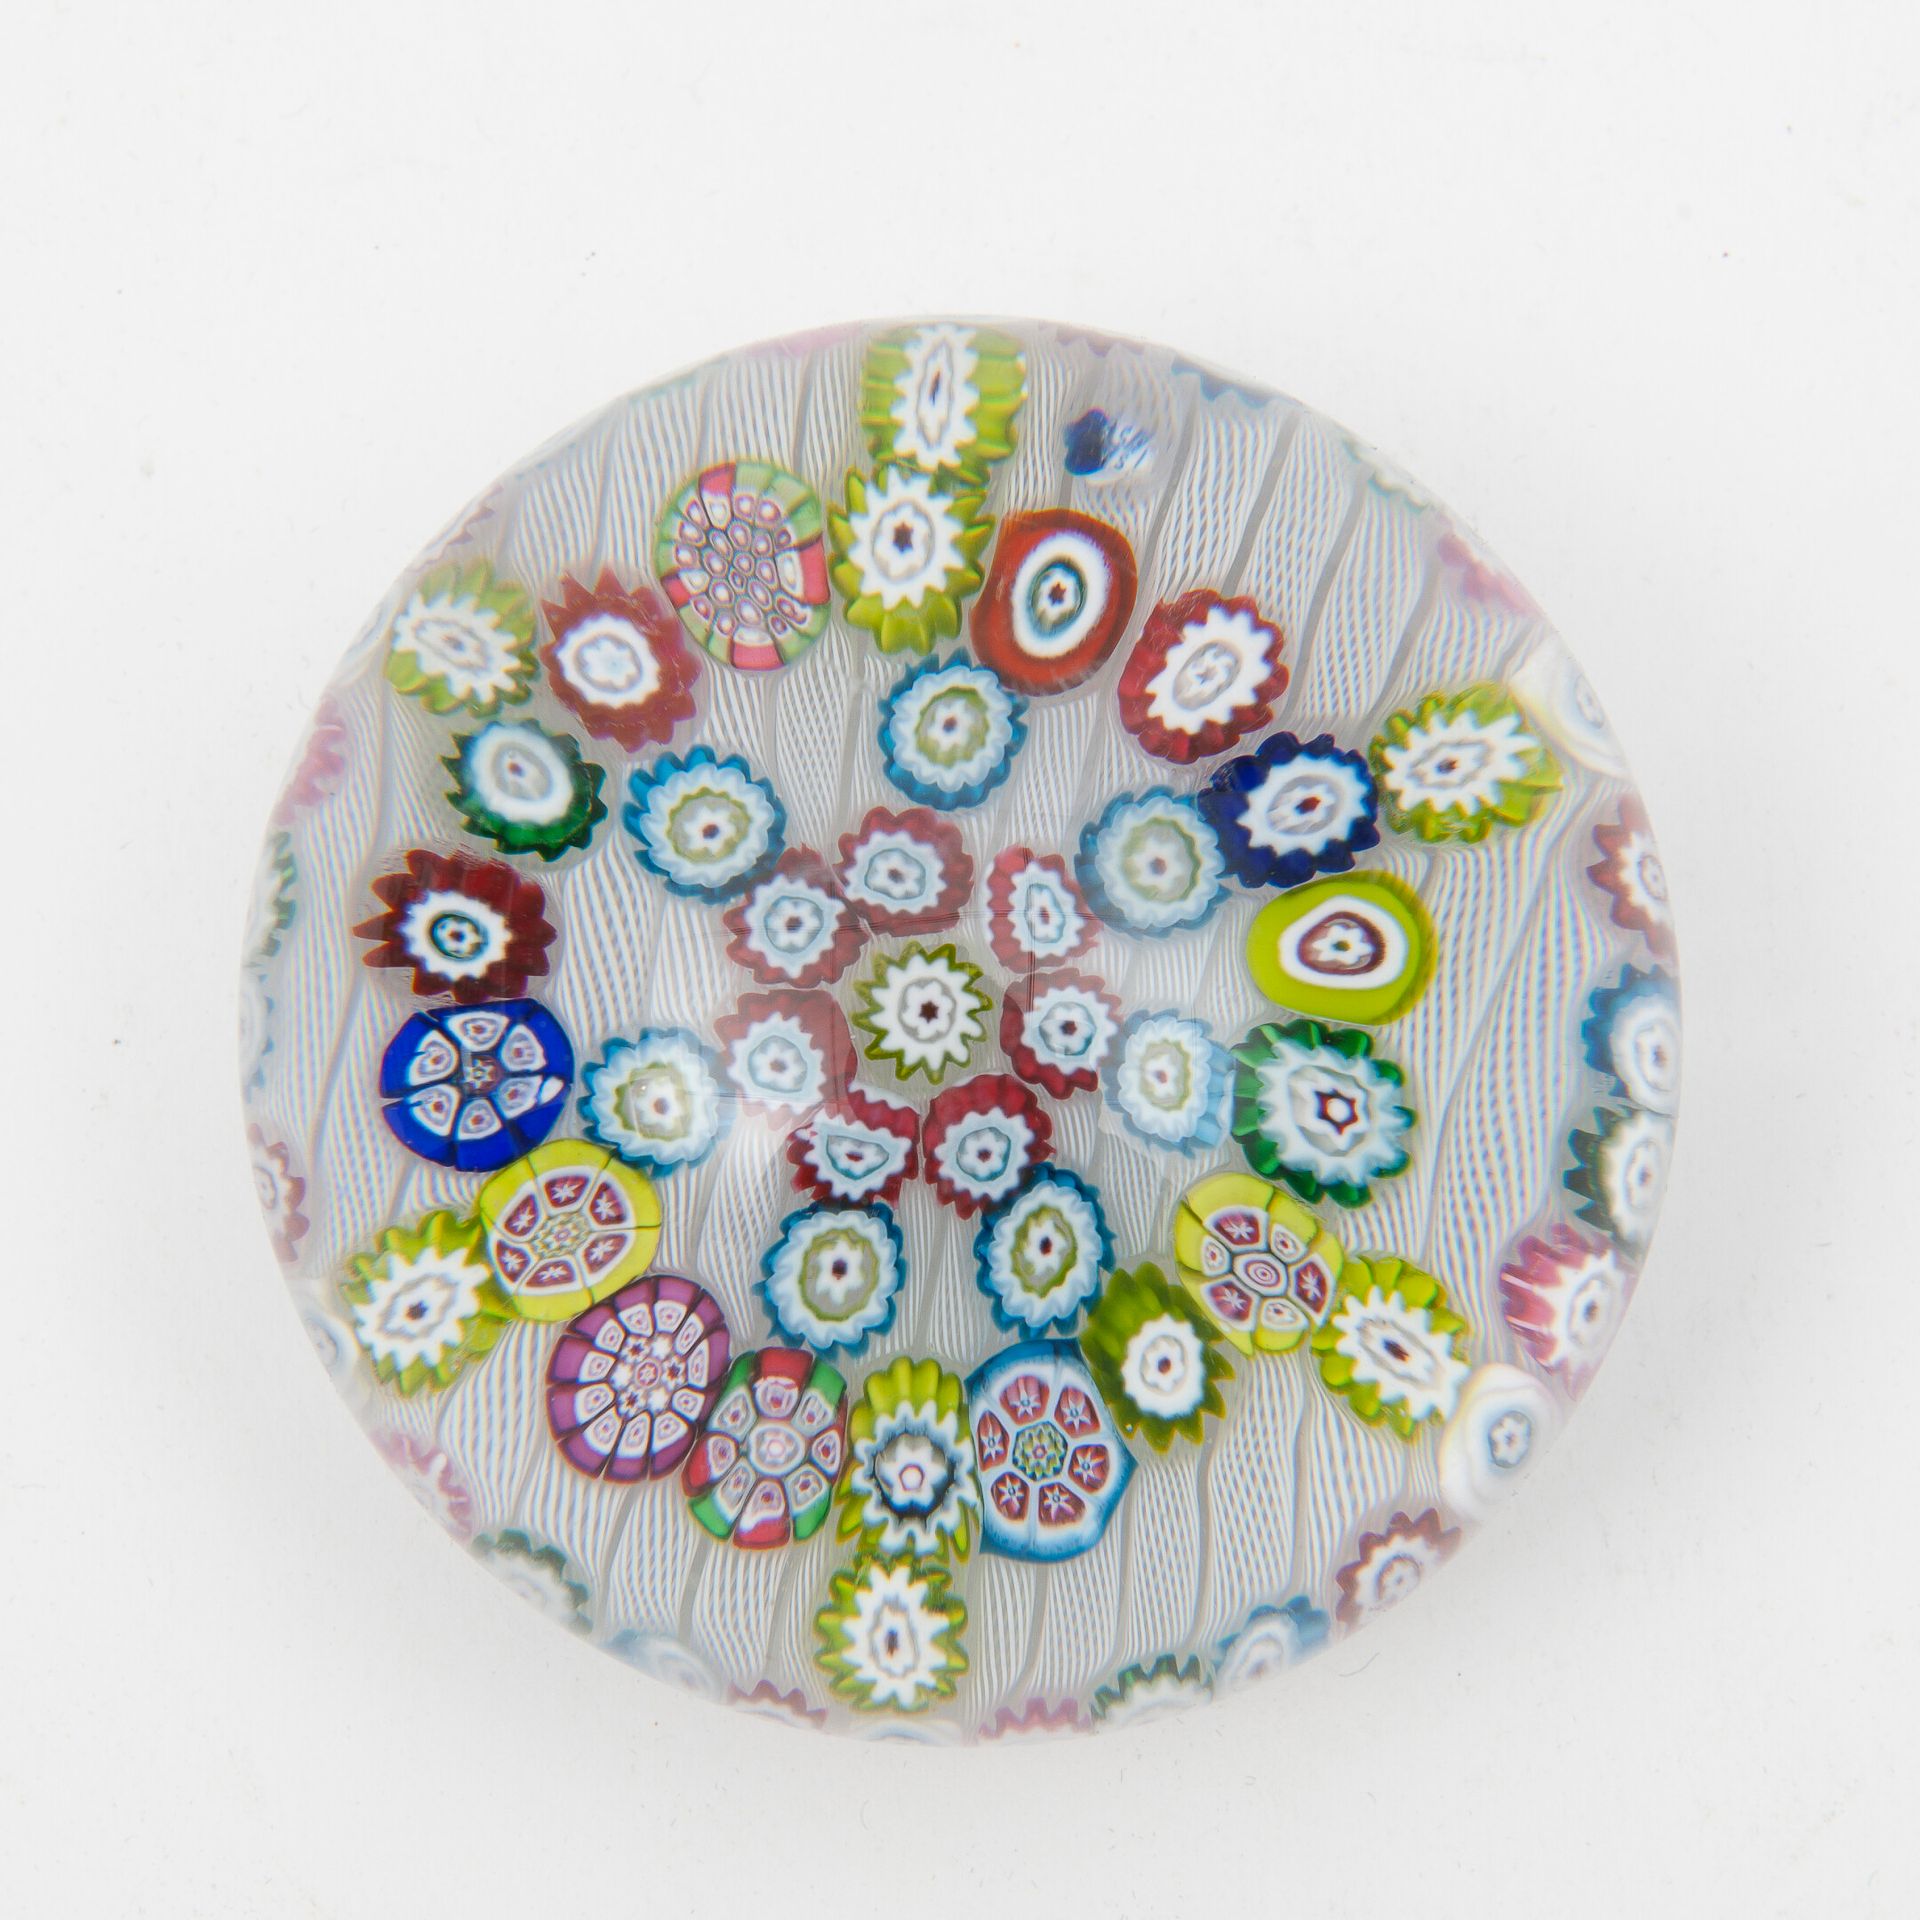 SAINT-LOUIS 无色水晶球形成的镇纸，装饰有五彩缤纷的糖果，以圆圈和星星的形式排列在丝状背景上。

在底座下做标记。

直径：约8.5厘米。

气泡，玻&hellip;